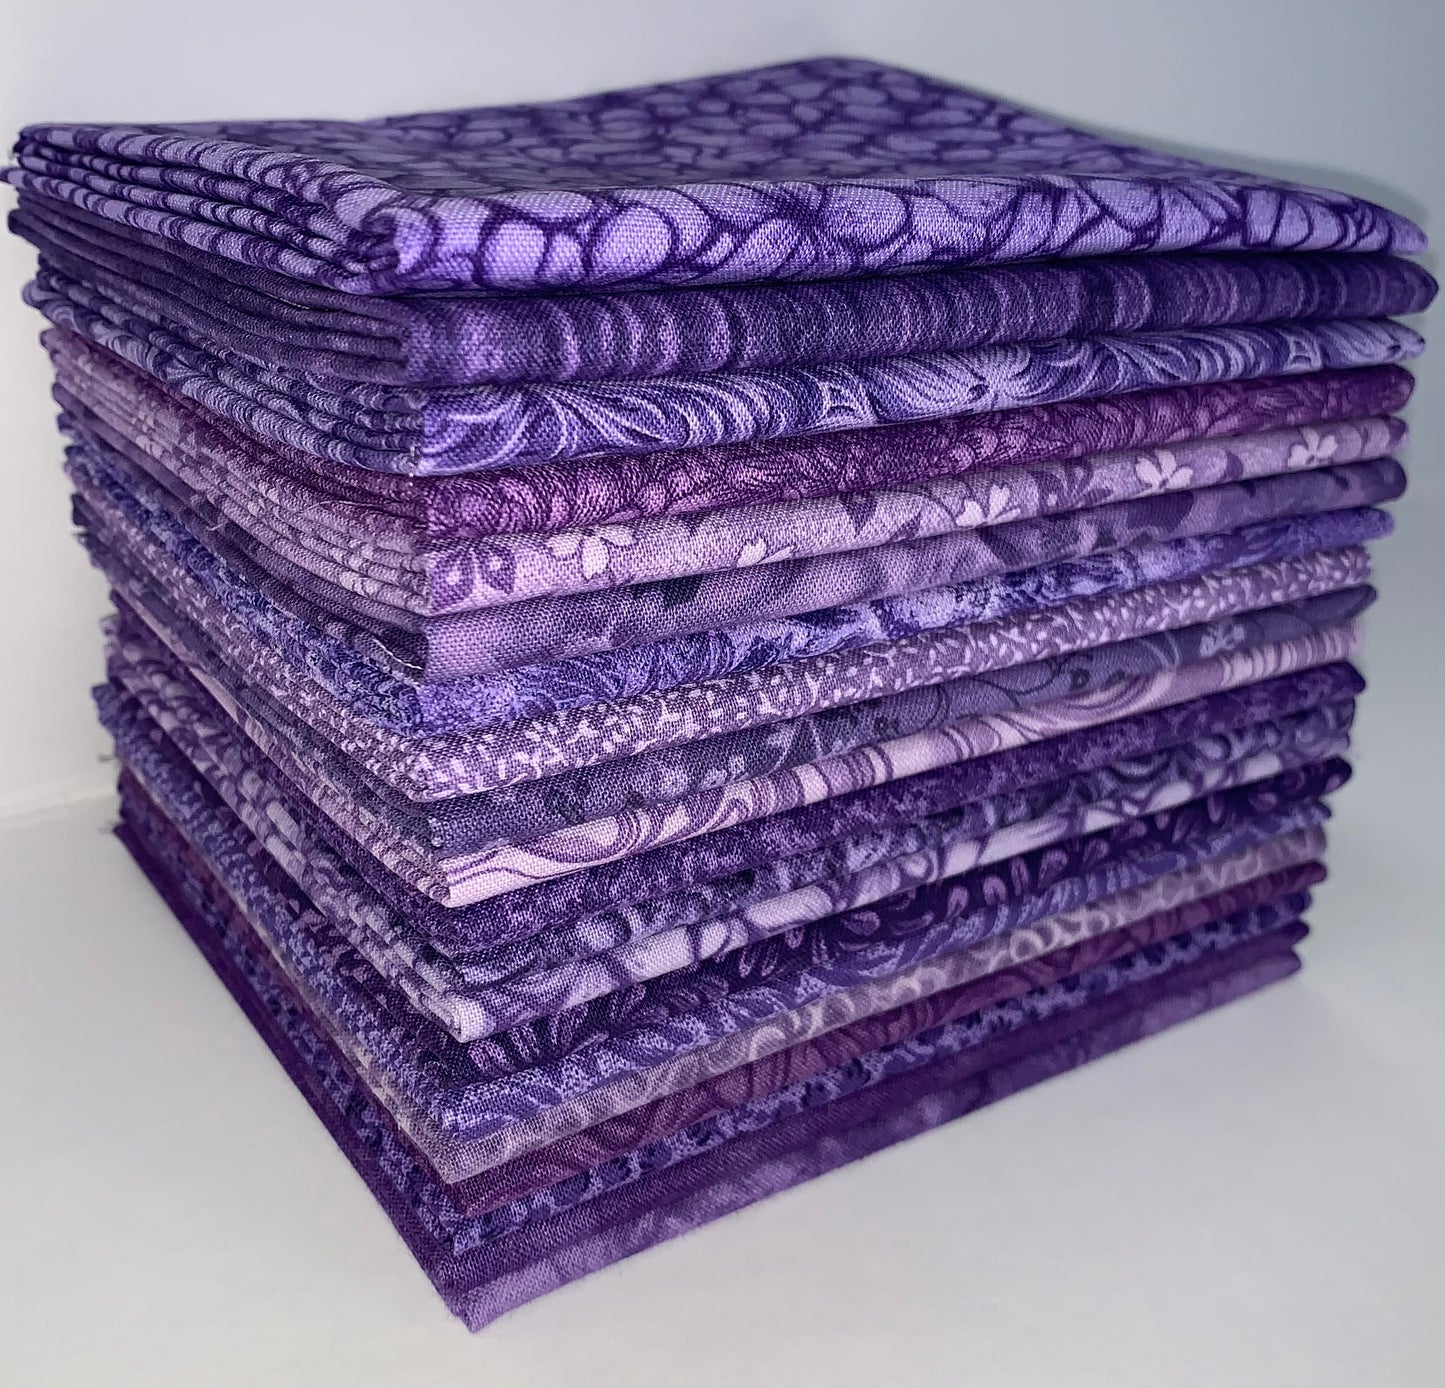 Purple Passion Fat Quarter Bundle - 20 Fabrics, 20 Total Fat Quarters